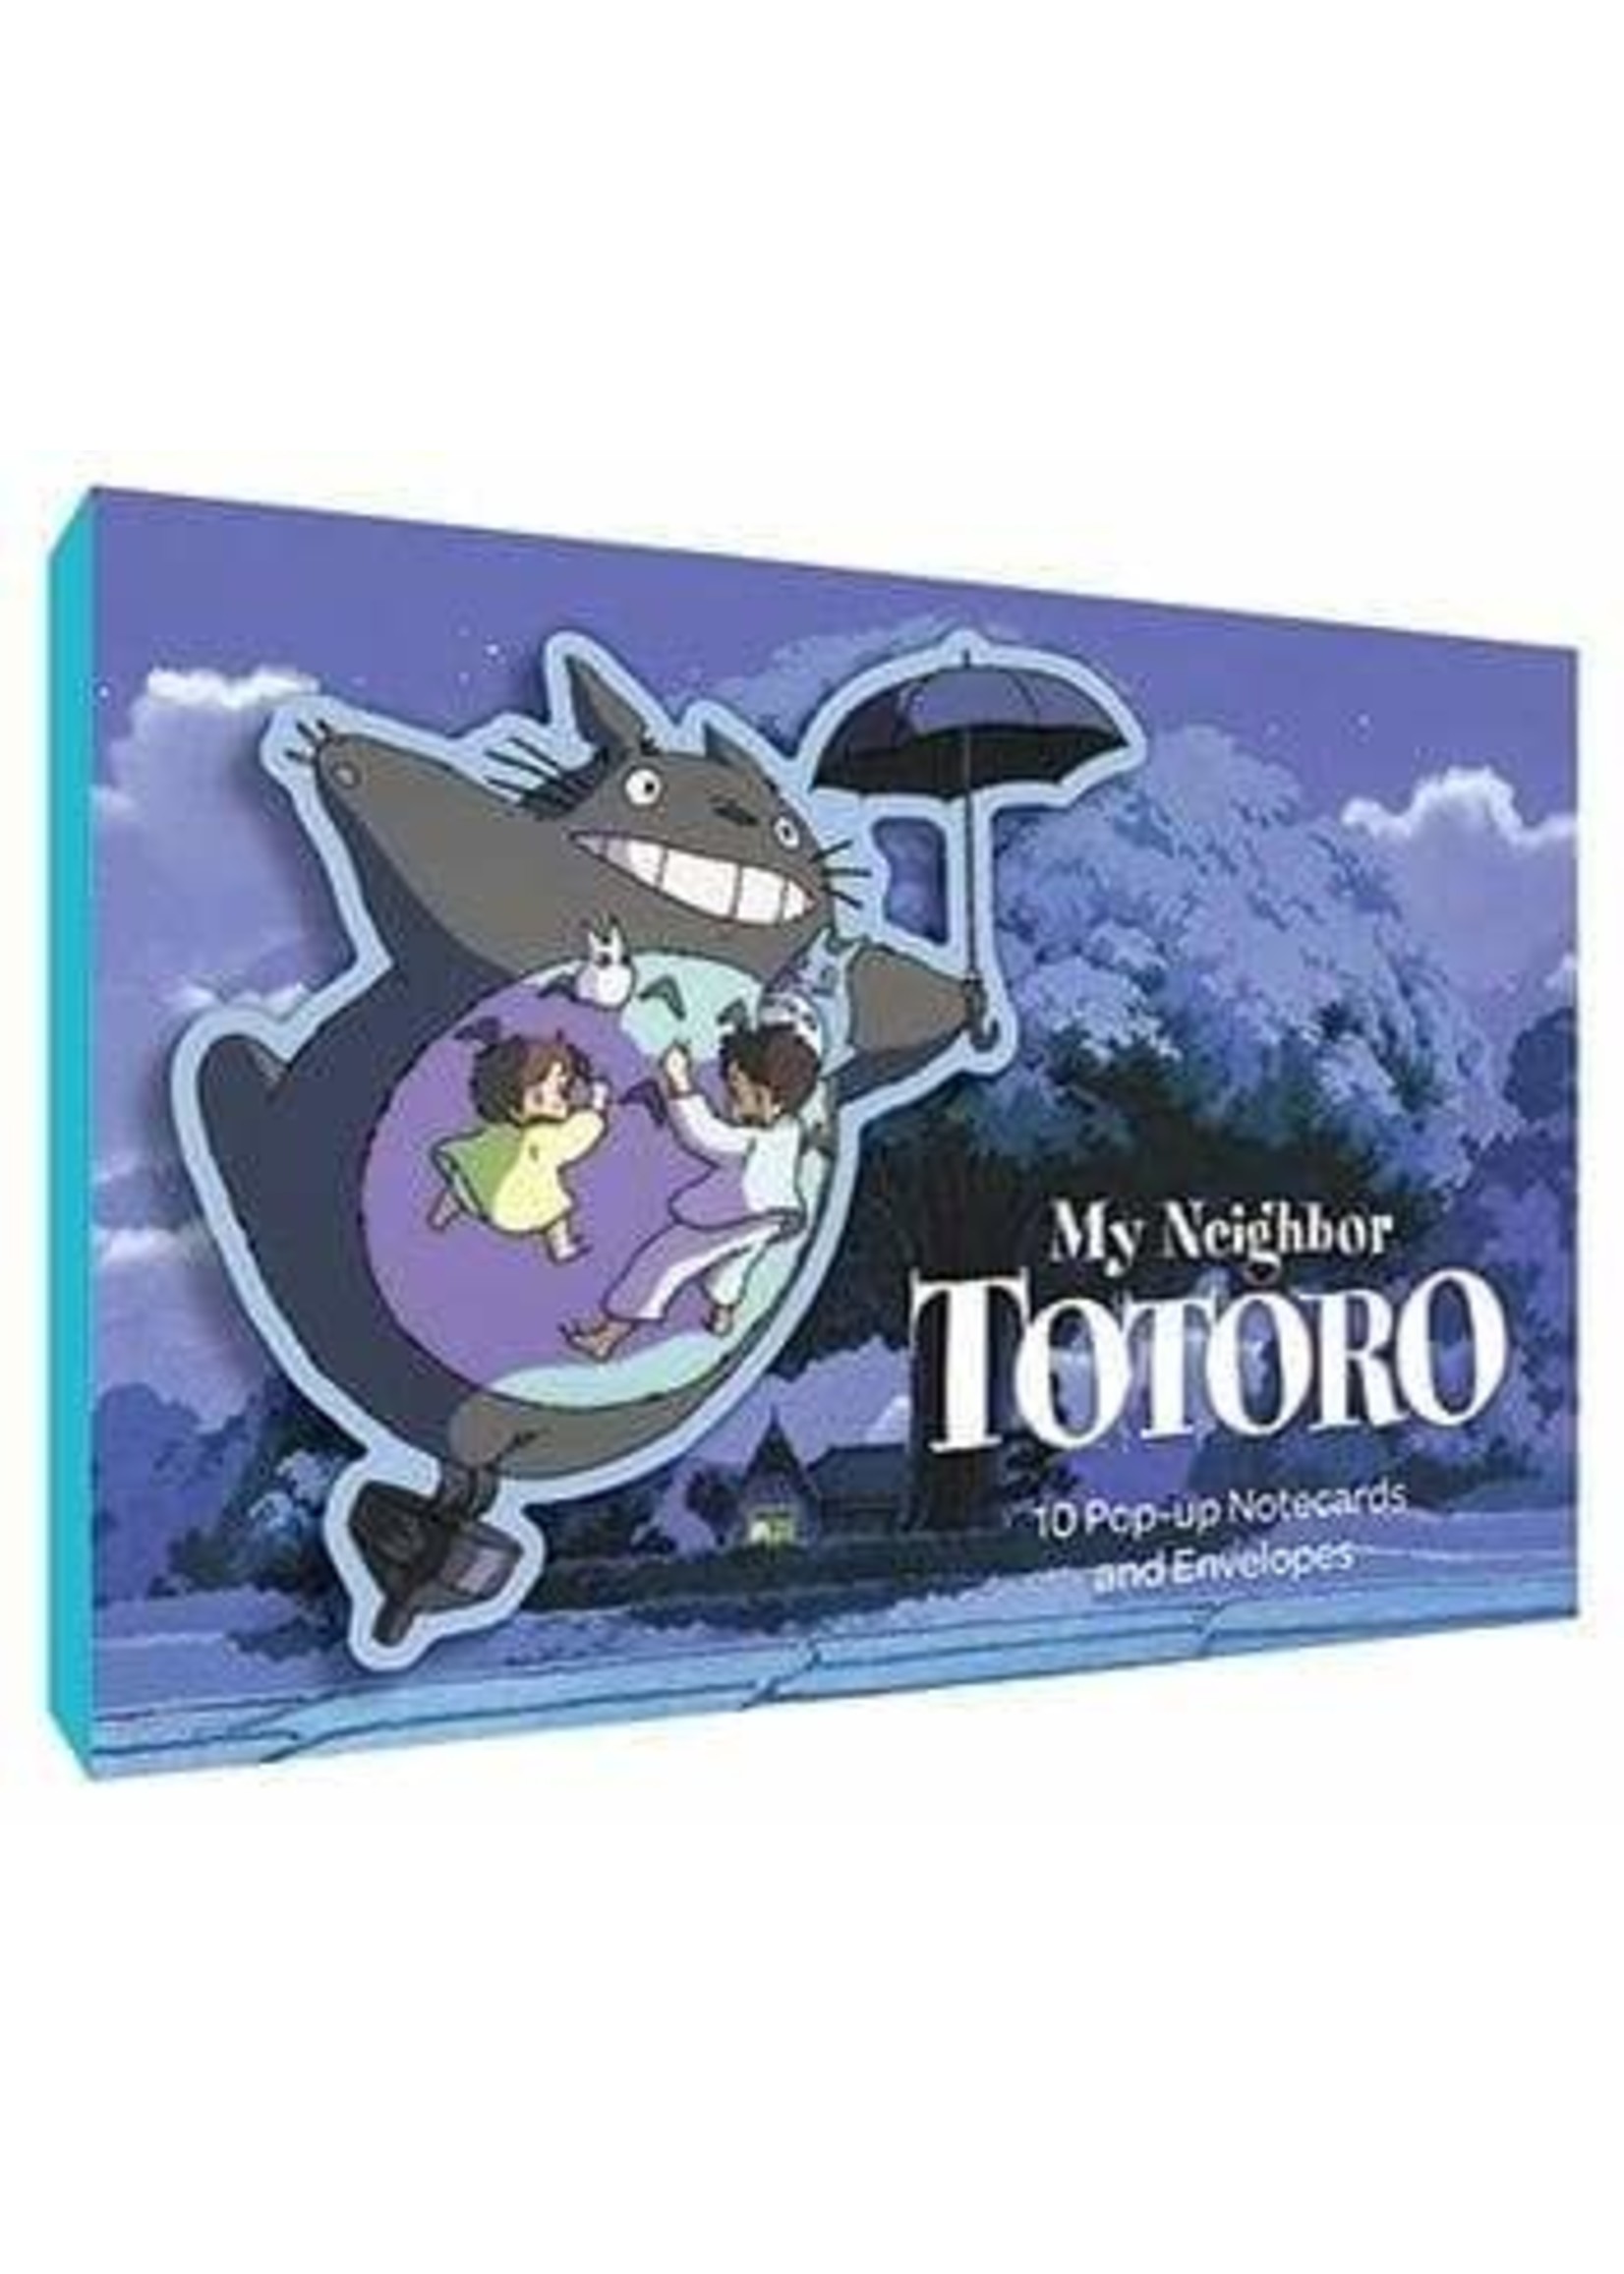 My Neighbor Totoro Pop-Up Notecards by Studio Ghibli